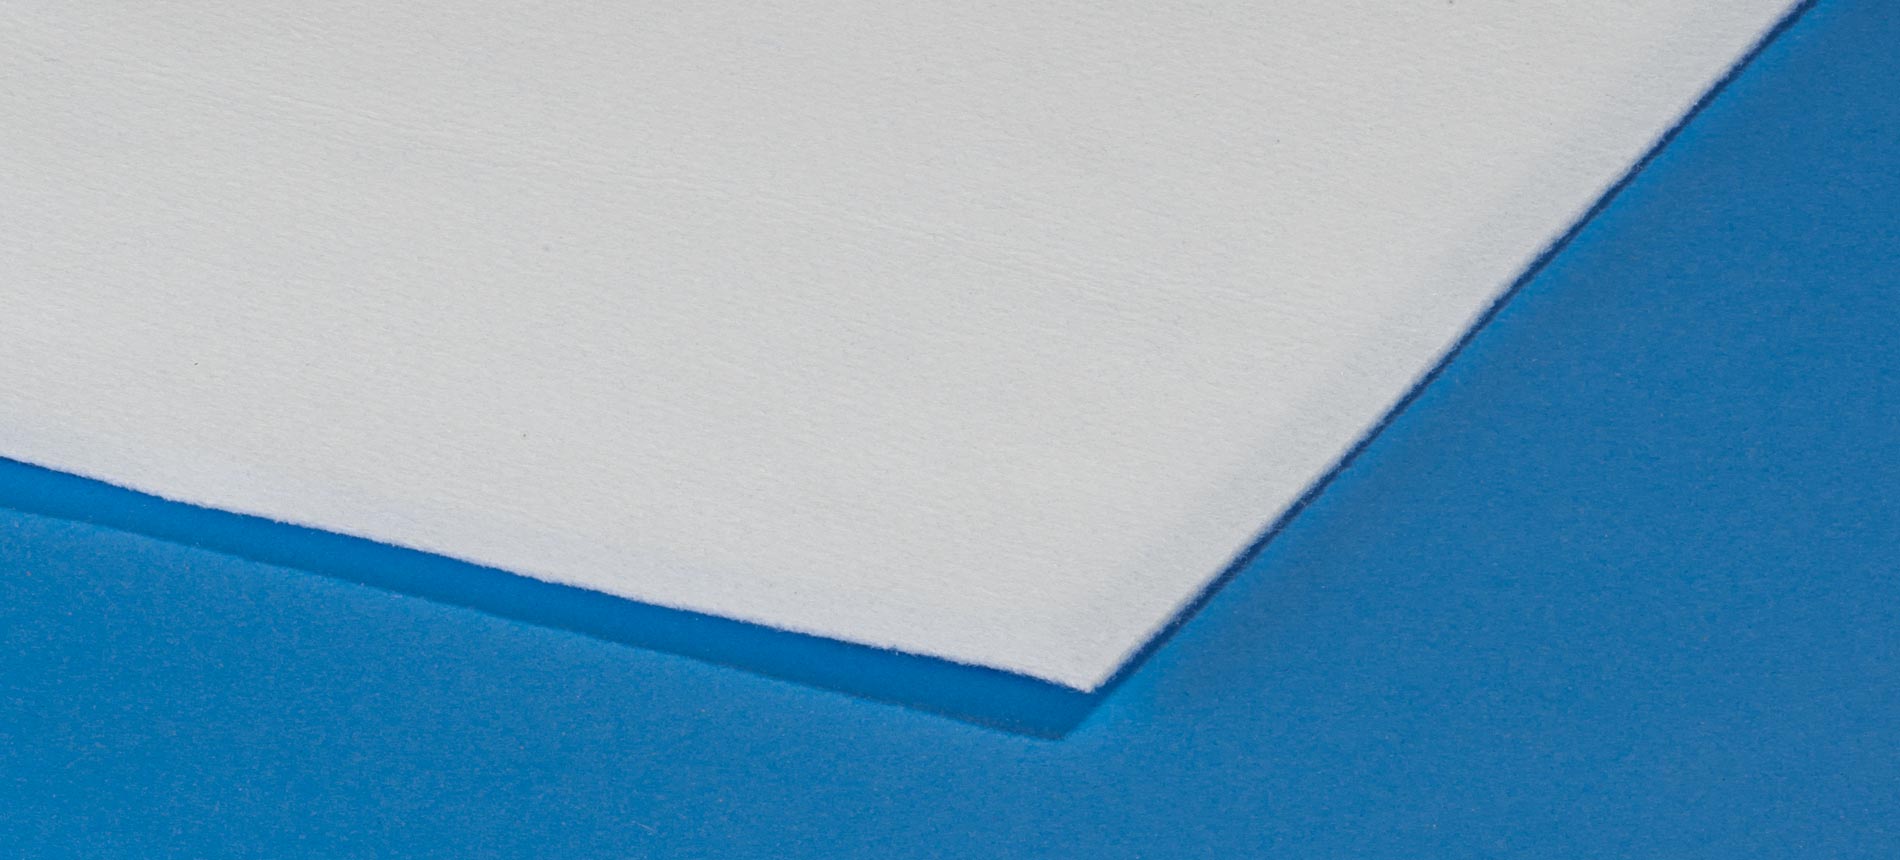 Polyester-Nadelfilz • Filteron GmbH - Ihr Filterspezialist aus Solingen  Filteron GmbH